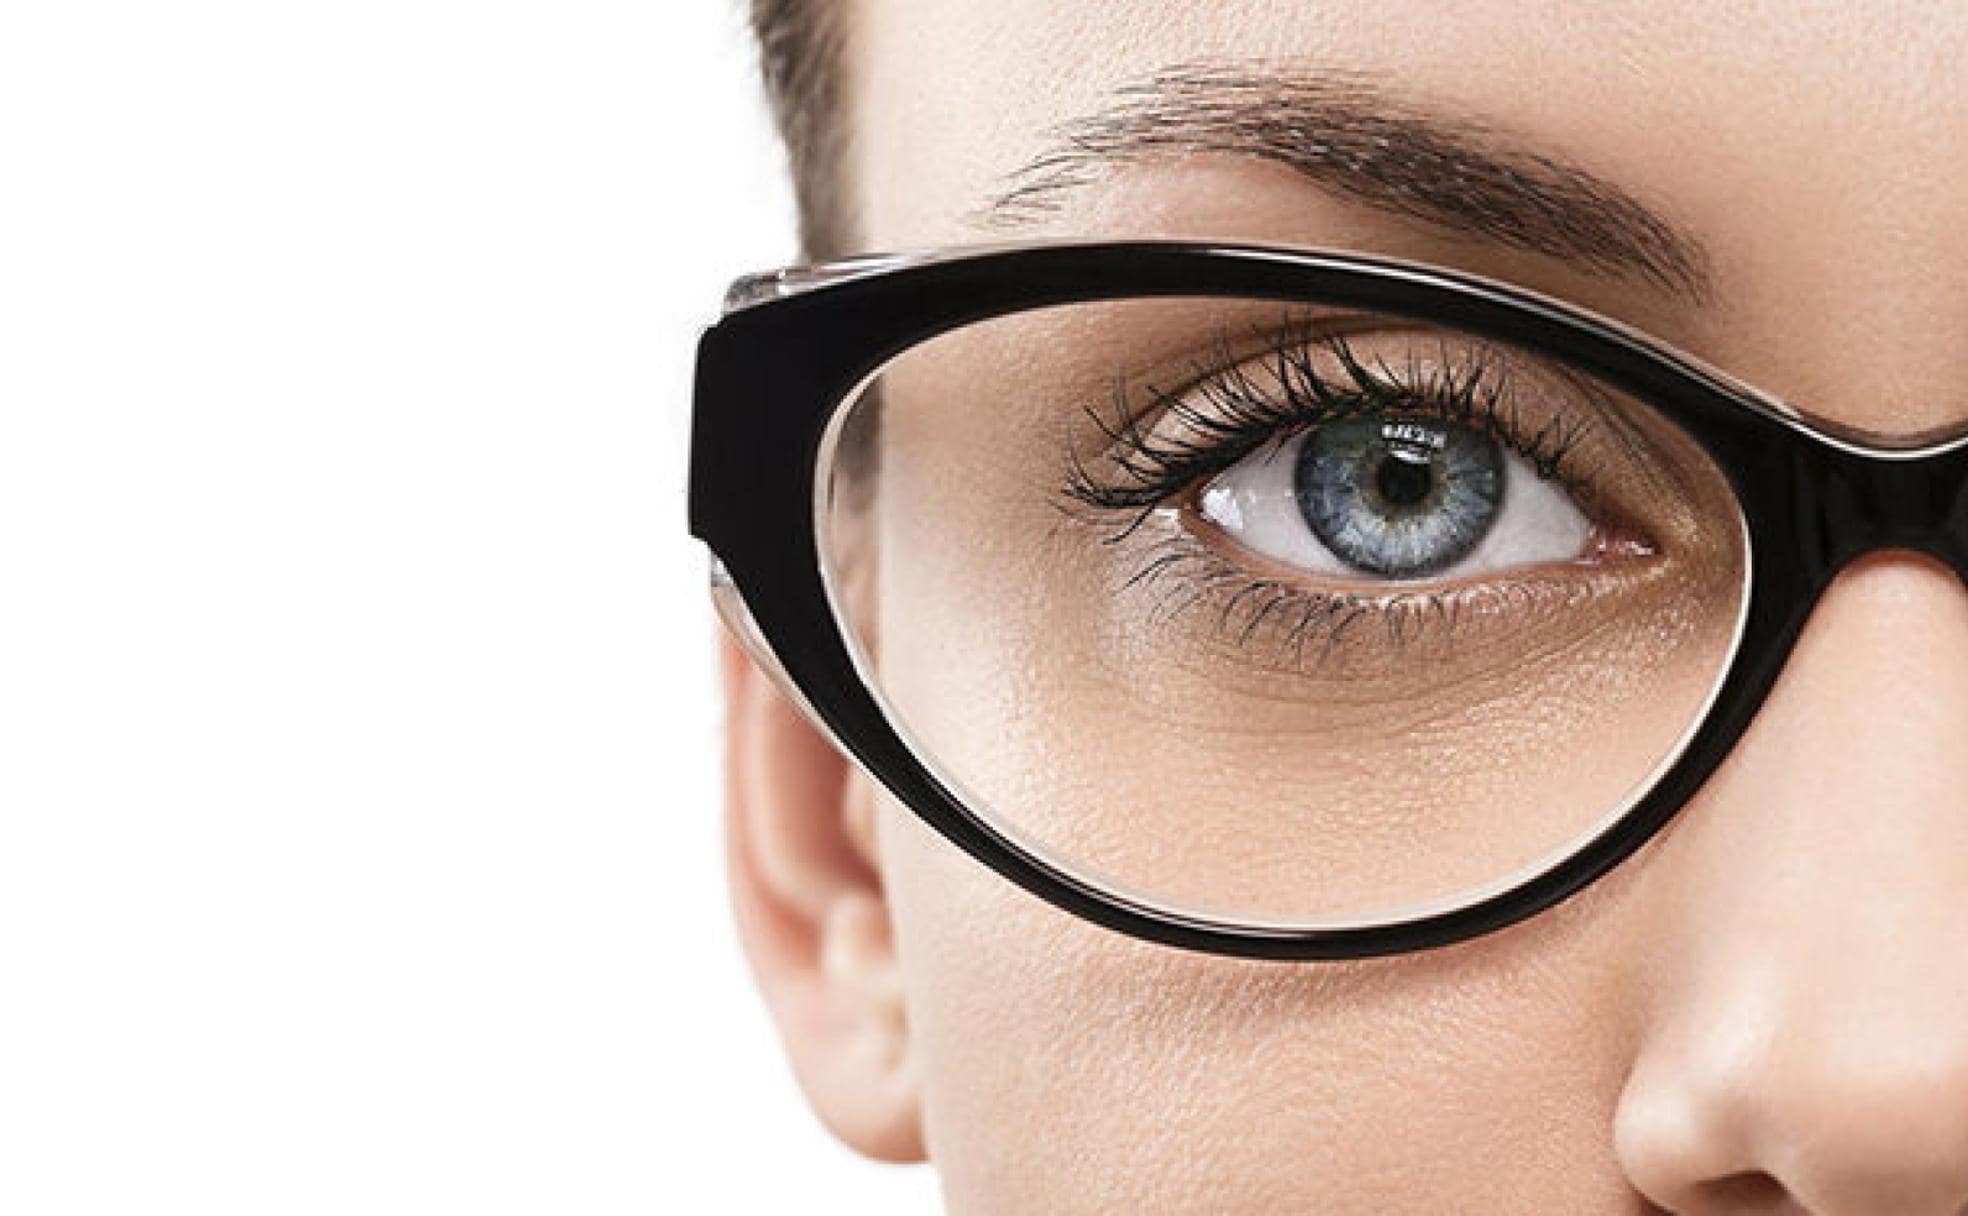 hipermetropía, astigmatismo, presbicia... ¿en qué diferencian? | El Correo